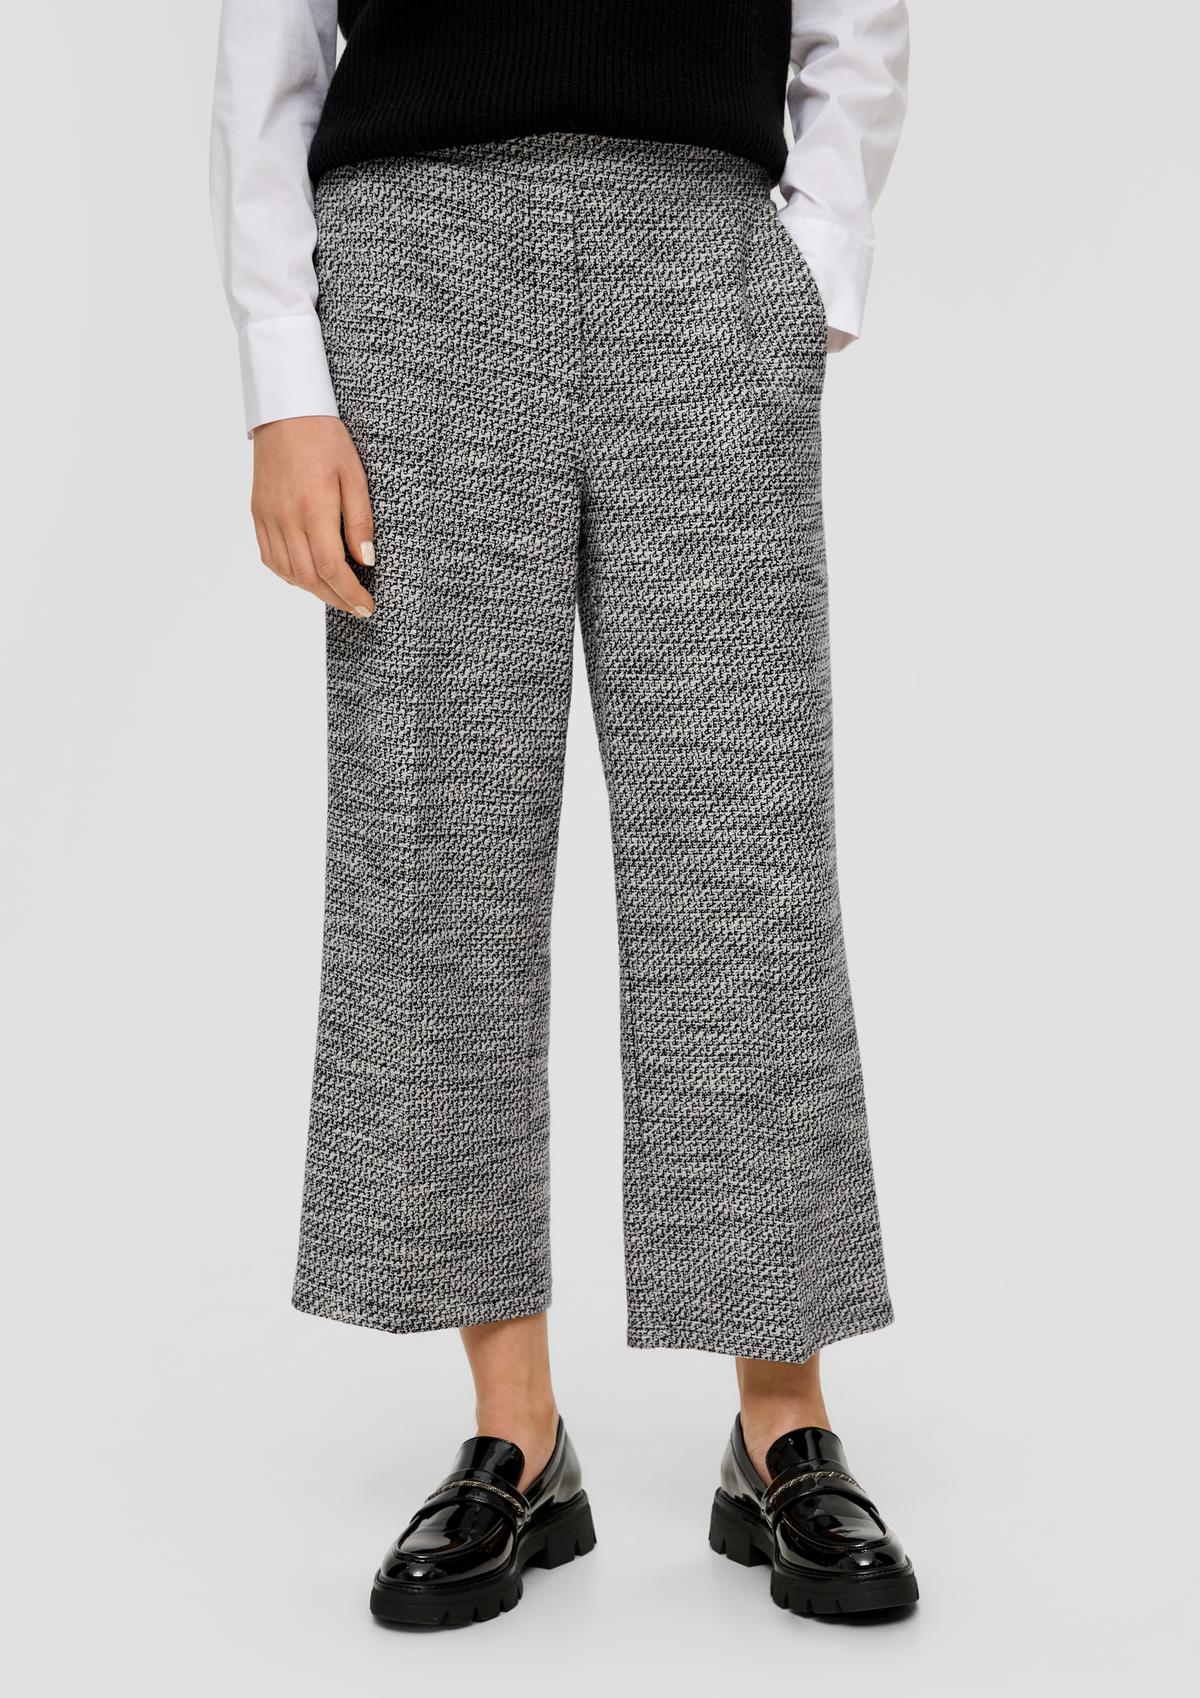 s.Oliver Regular : jupe-culotte à motif texturé